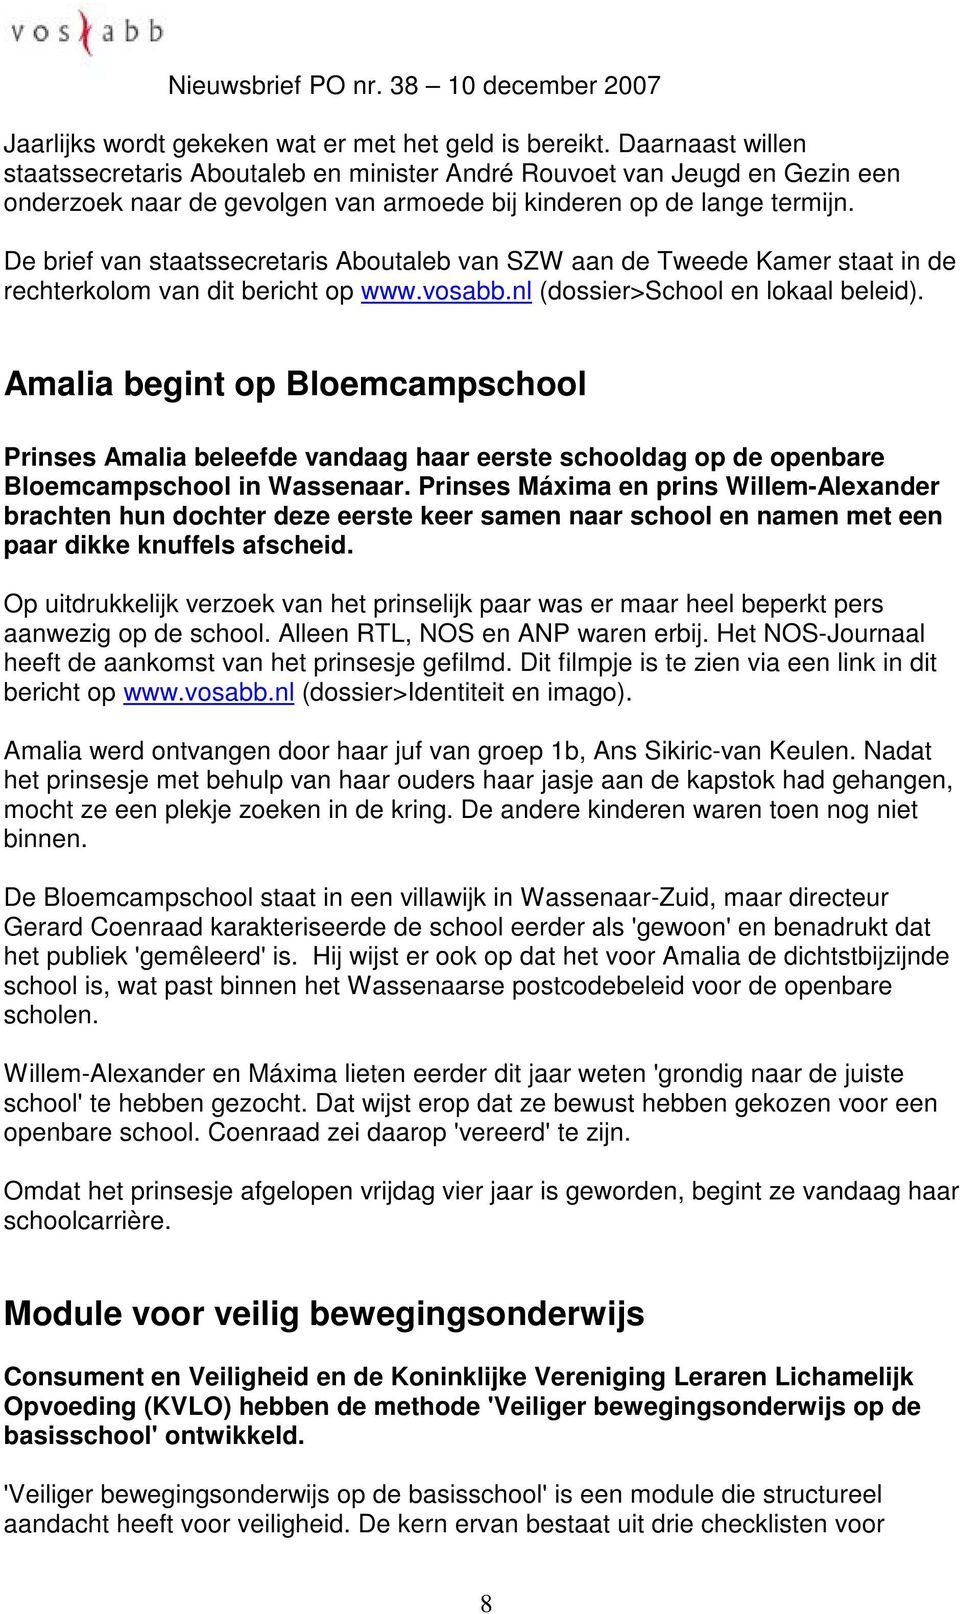 De brief van staatssecretaris Aboutaleb van SZW aan de Tweede Kamer staat in de rechterkolom van dit bericht op www.vosabb.nl (dossier>school en lokaal beleid).